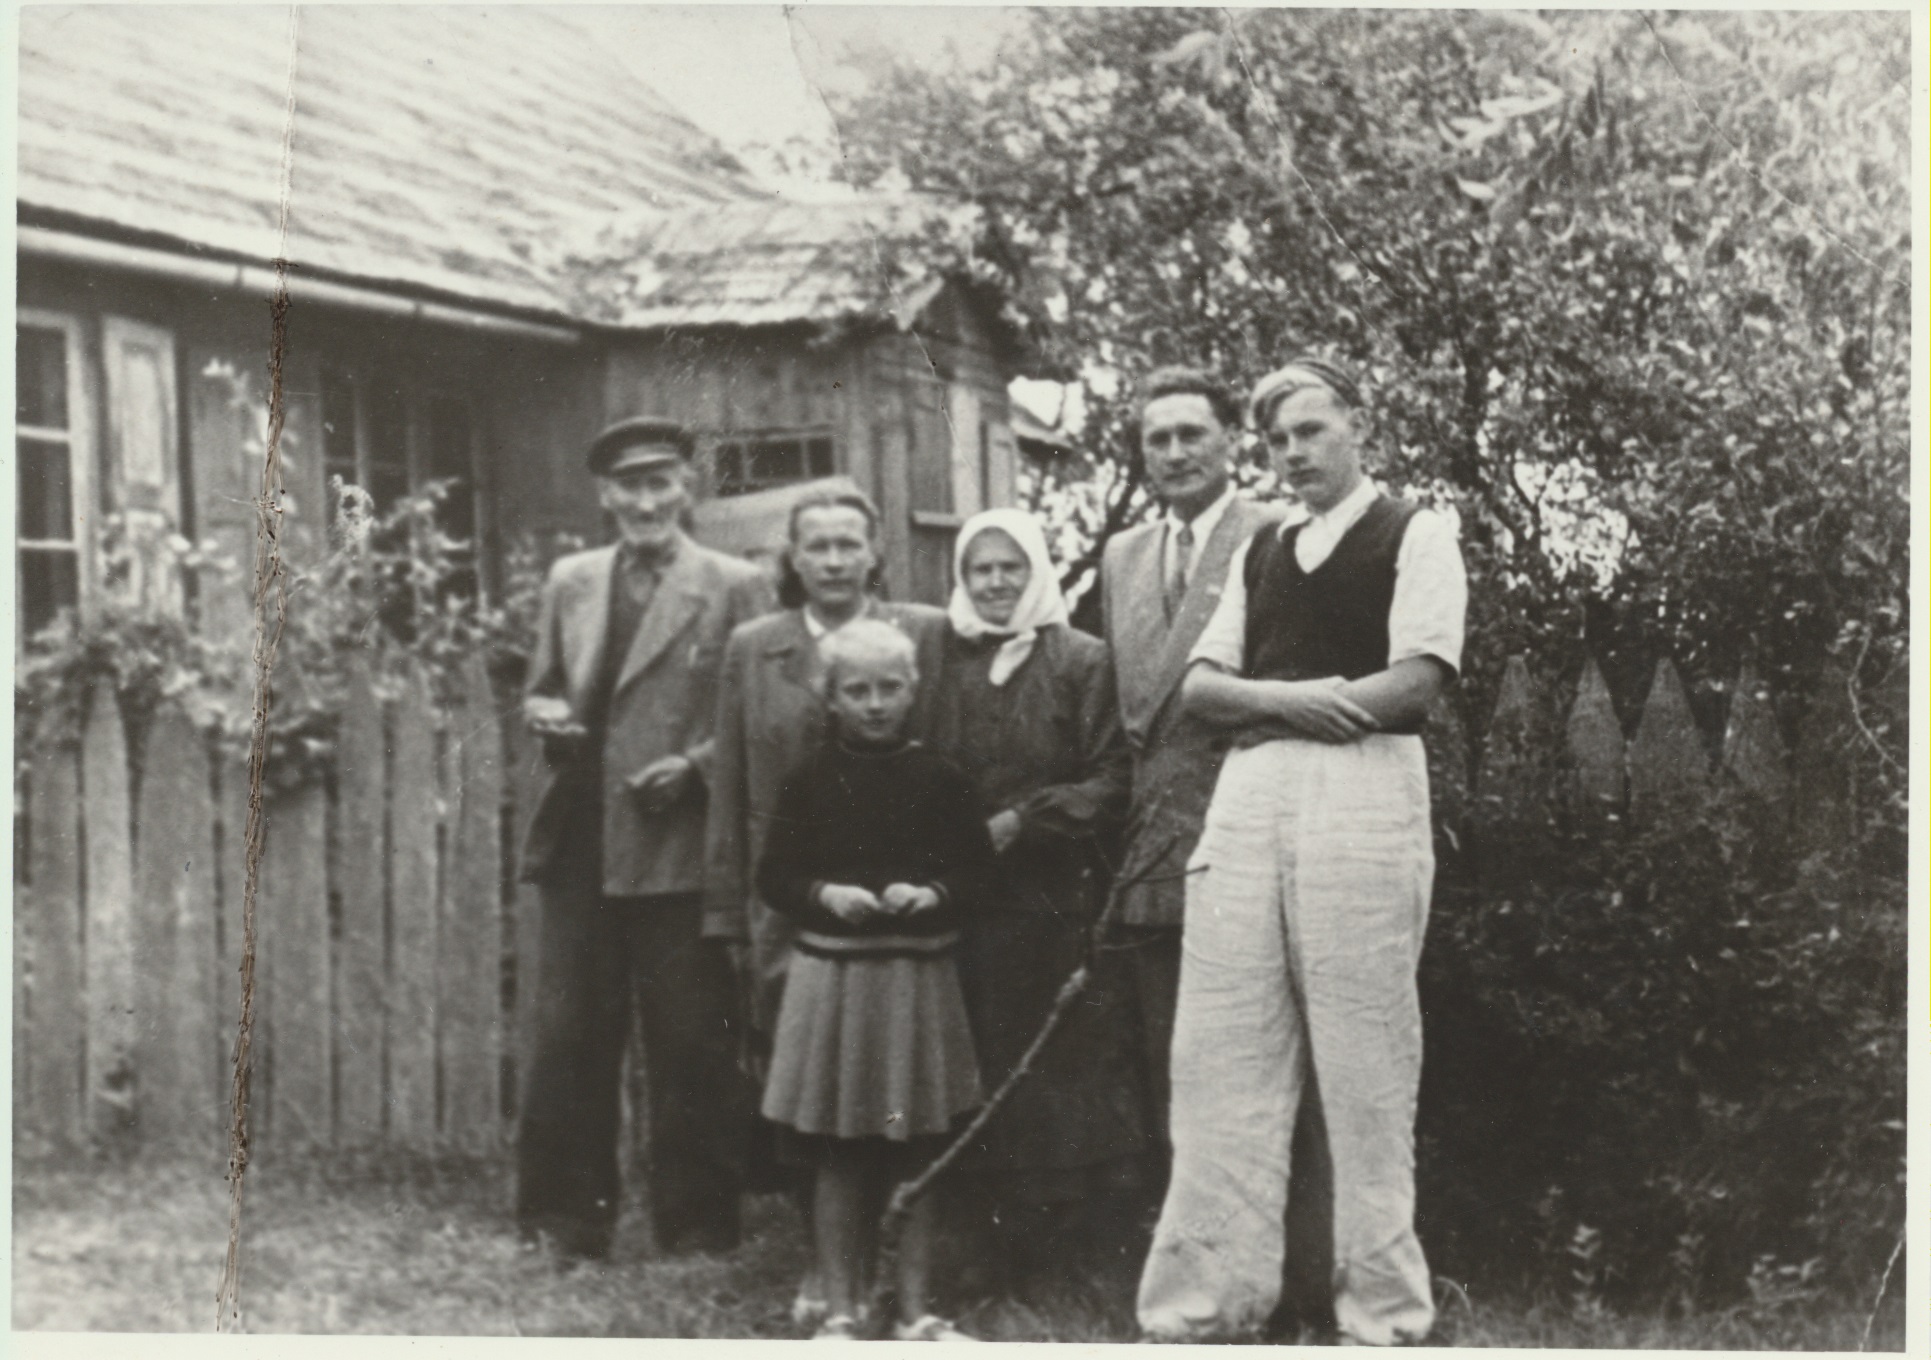 Darbėnuose, kur grįžę į Lietuvą įsikūrė tėvai. Iš kairės – tėvas Jonas, žmona Elena, dukra Agnė, mama Elzbieta, J. Šimkus ir sūnus Jurgis